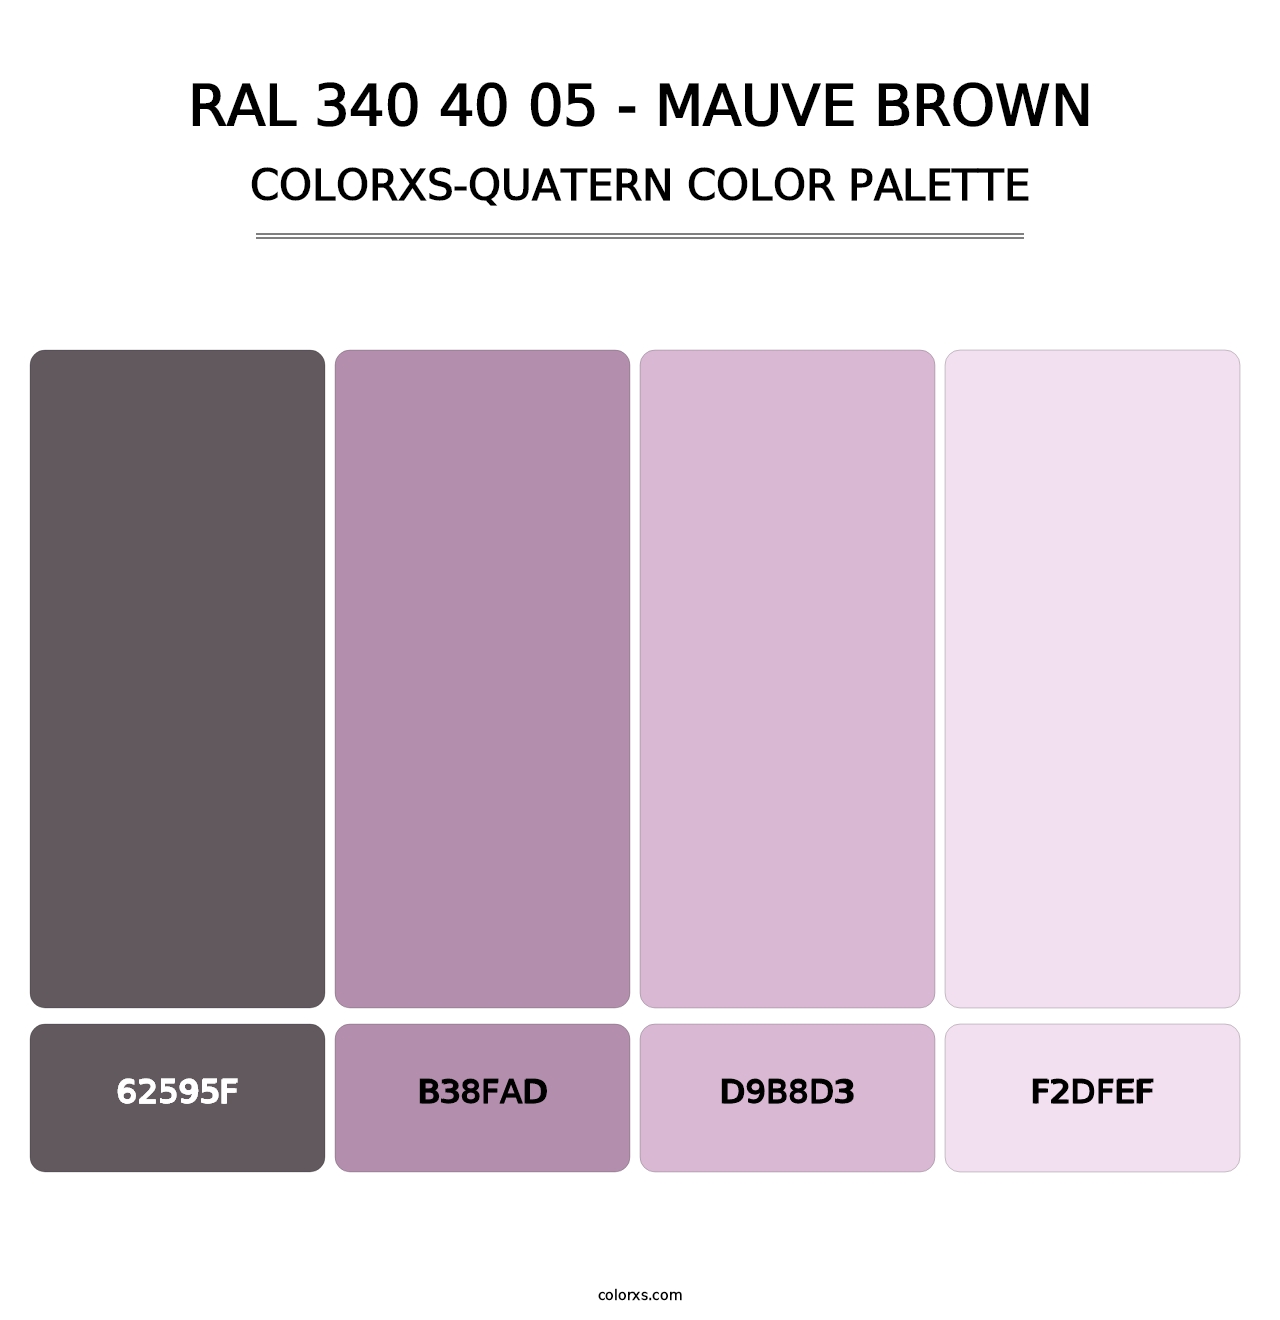 RAL 340 40 05 - Mauve Brown - Colorxs Quatern Palette